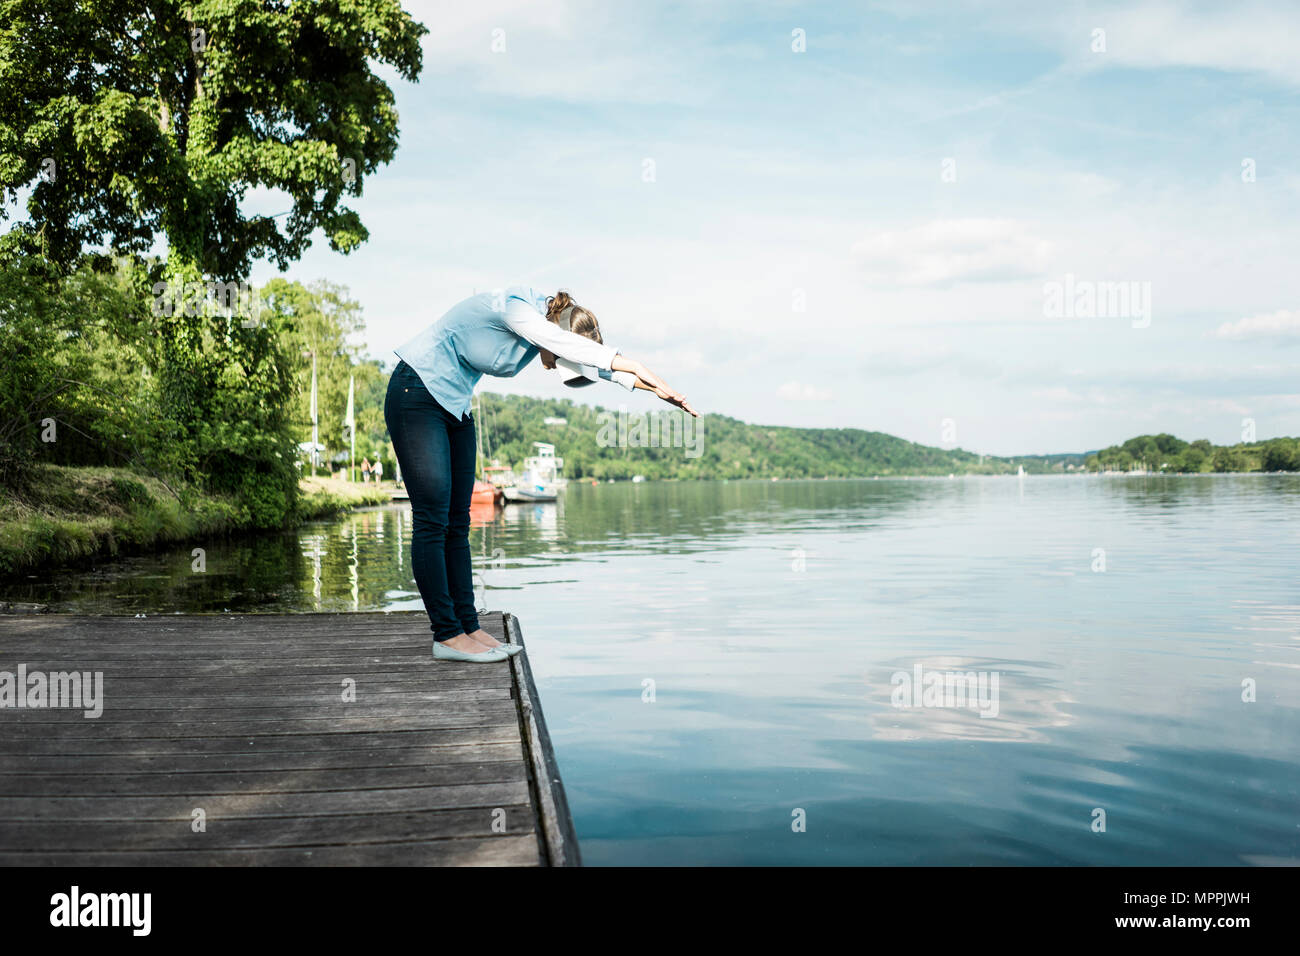 Woman on jetty port lunettes VR semblant de plonger dans un lac Banque D'Images